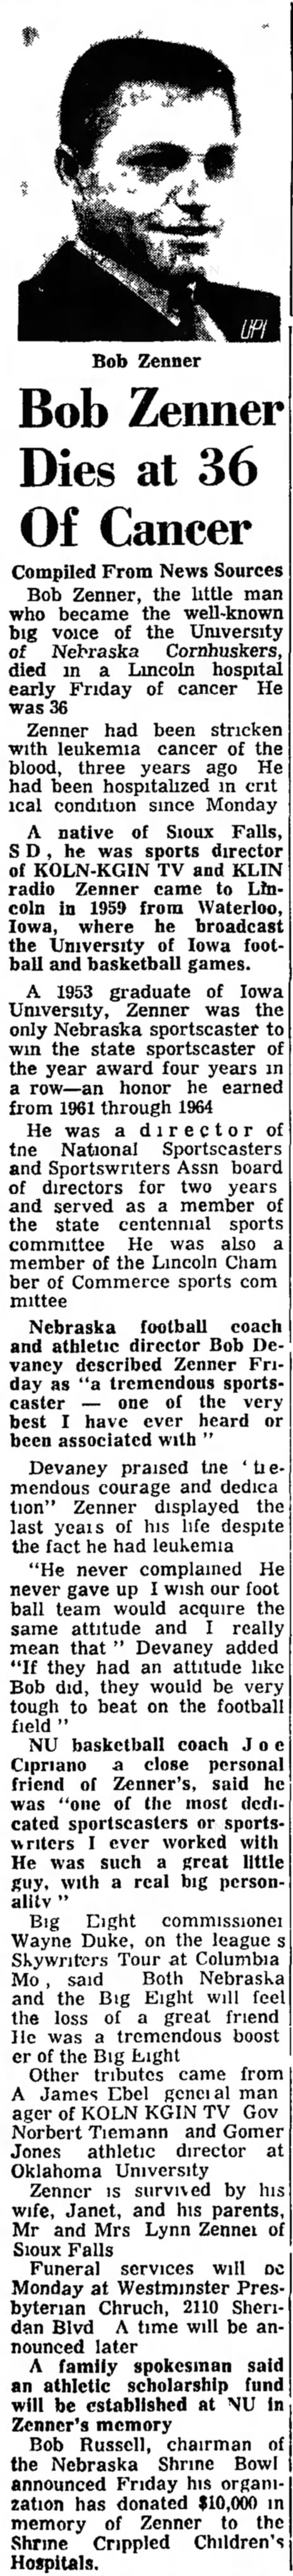 1967 Bob Zenner's death